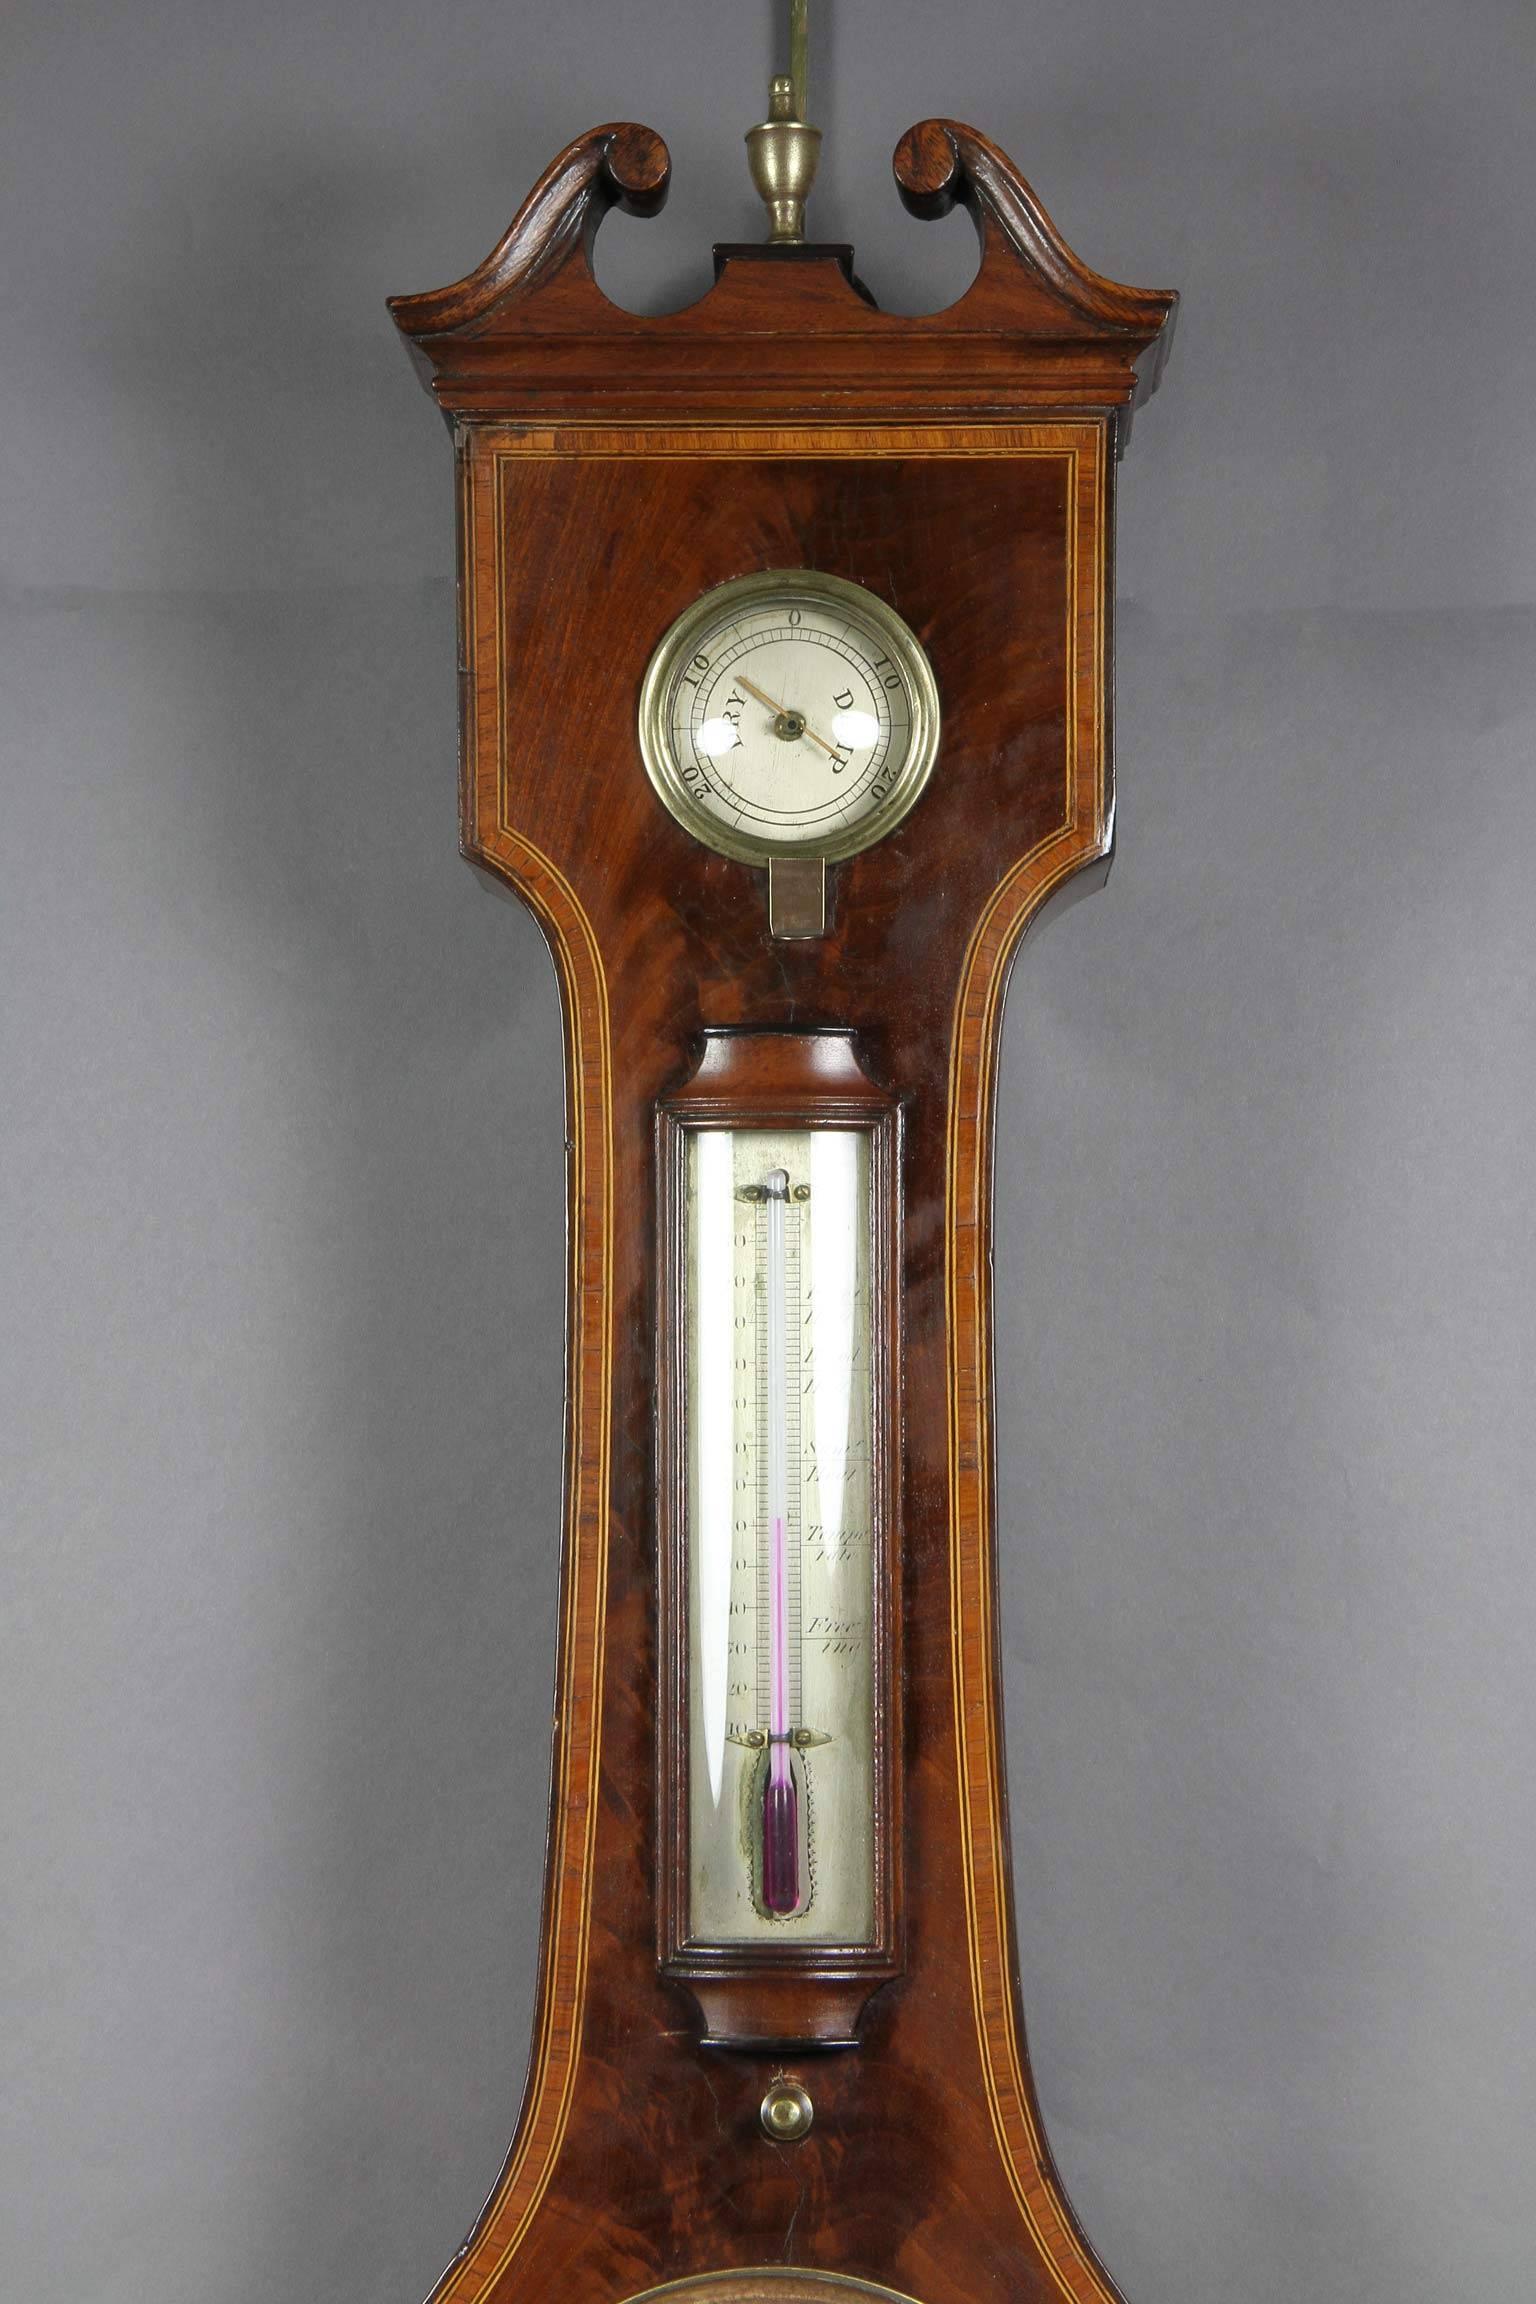 Zerbrochener Gewölbedeckel über einer Hydrometeranzeige und einem Thermometer, einer Uhr, einer Barometeranzeige und einer Wasserwaage.